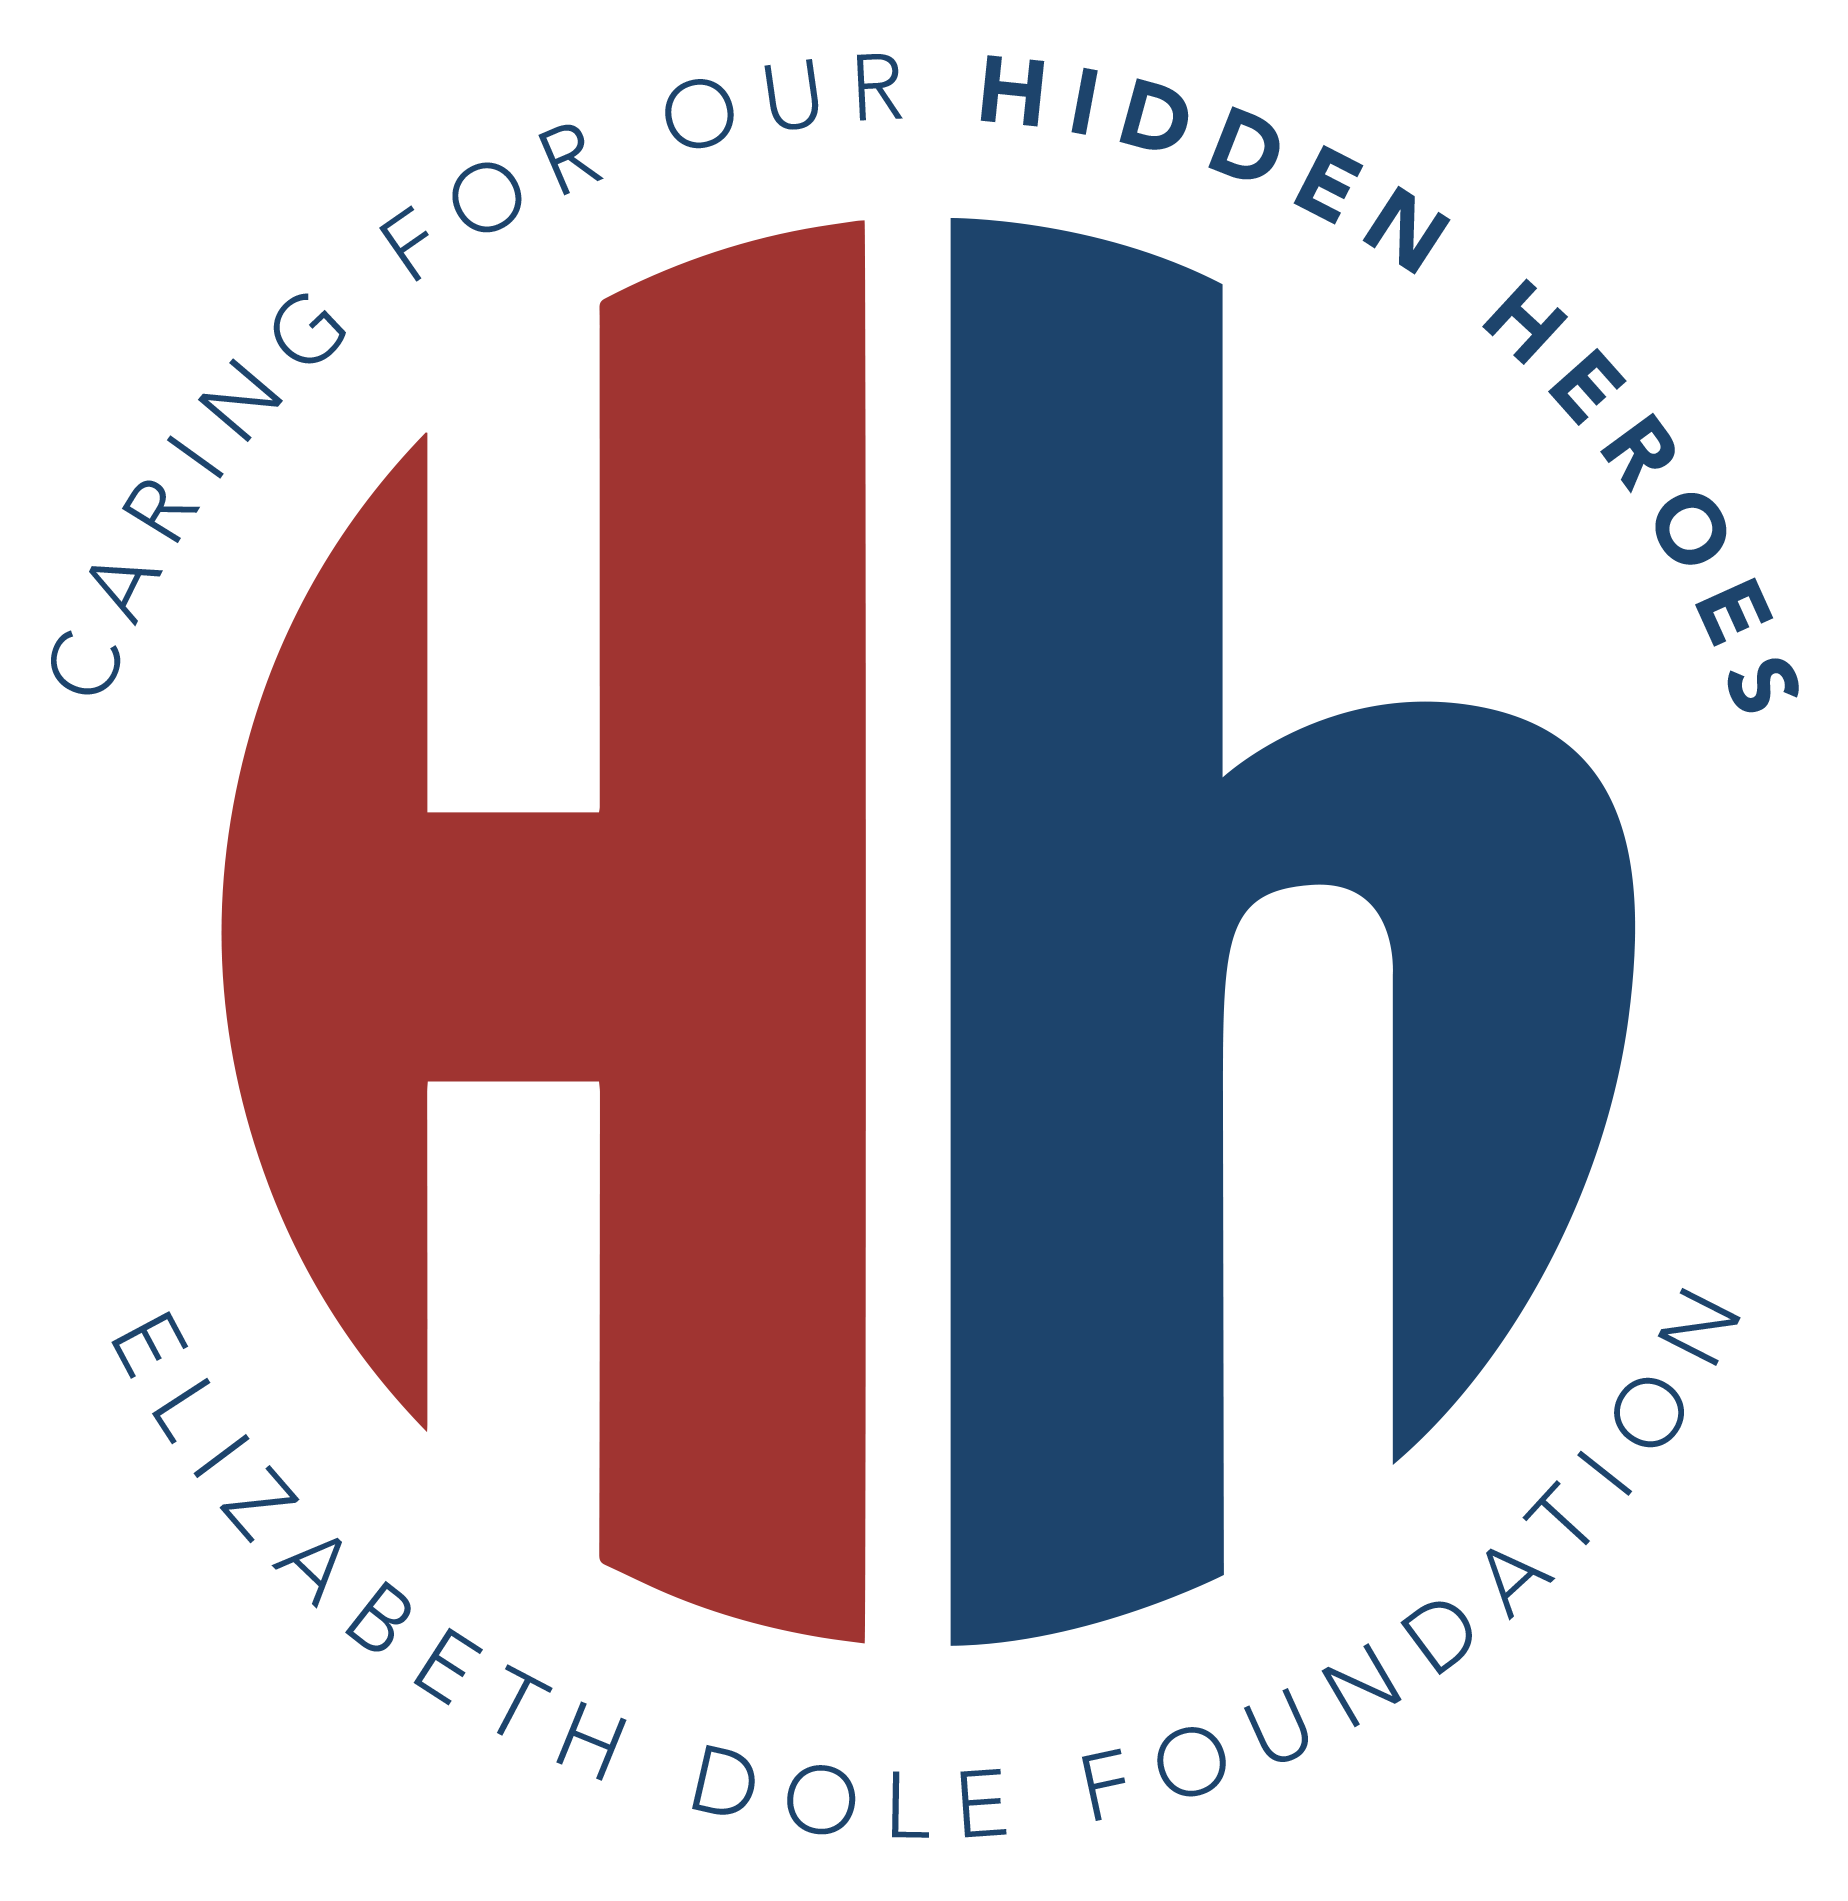 Elizabeth Dole Foundation